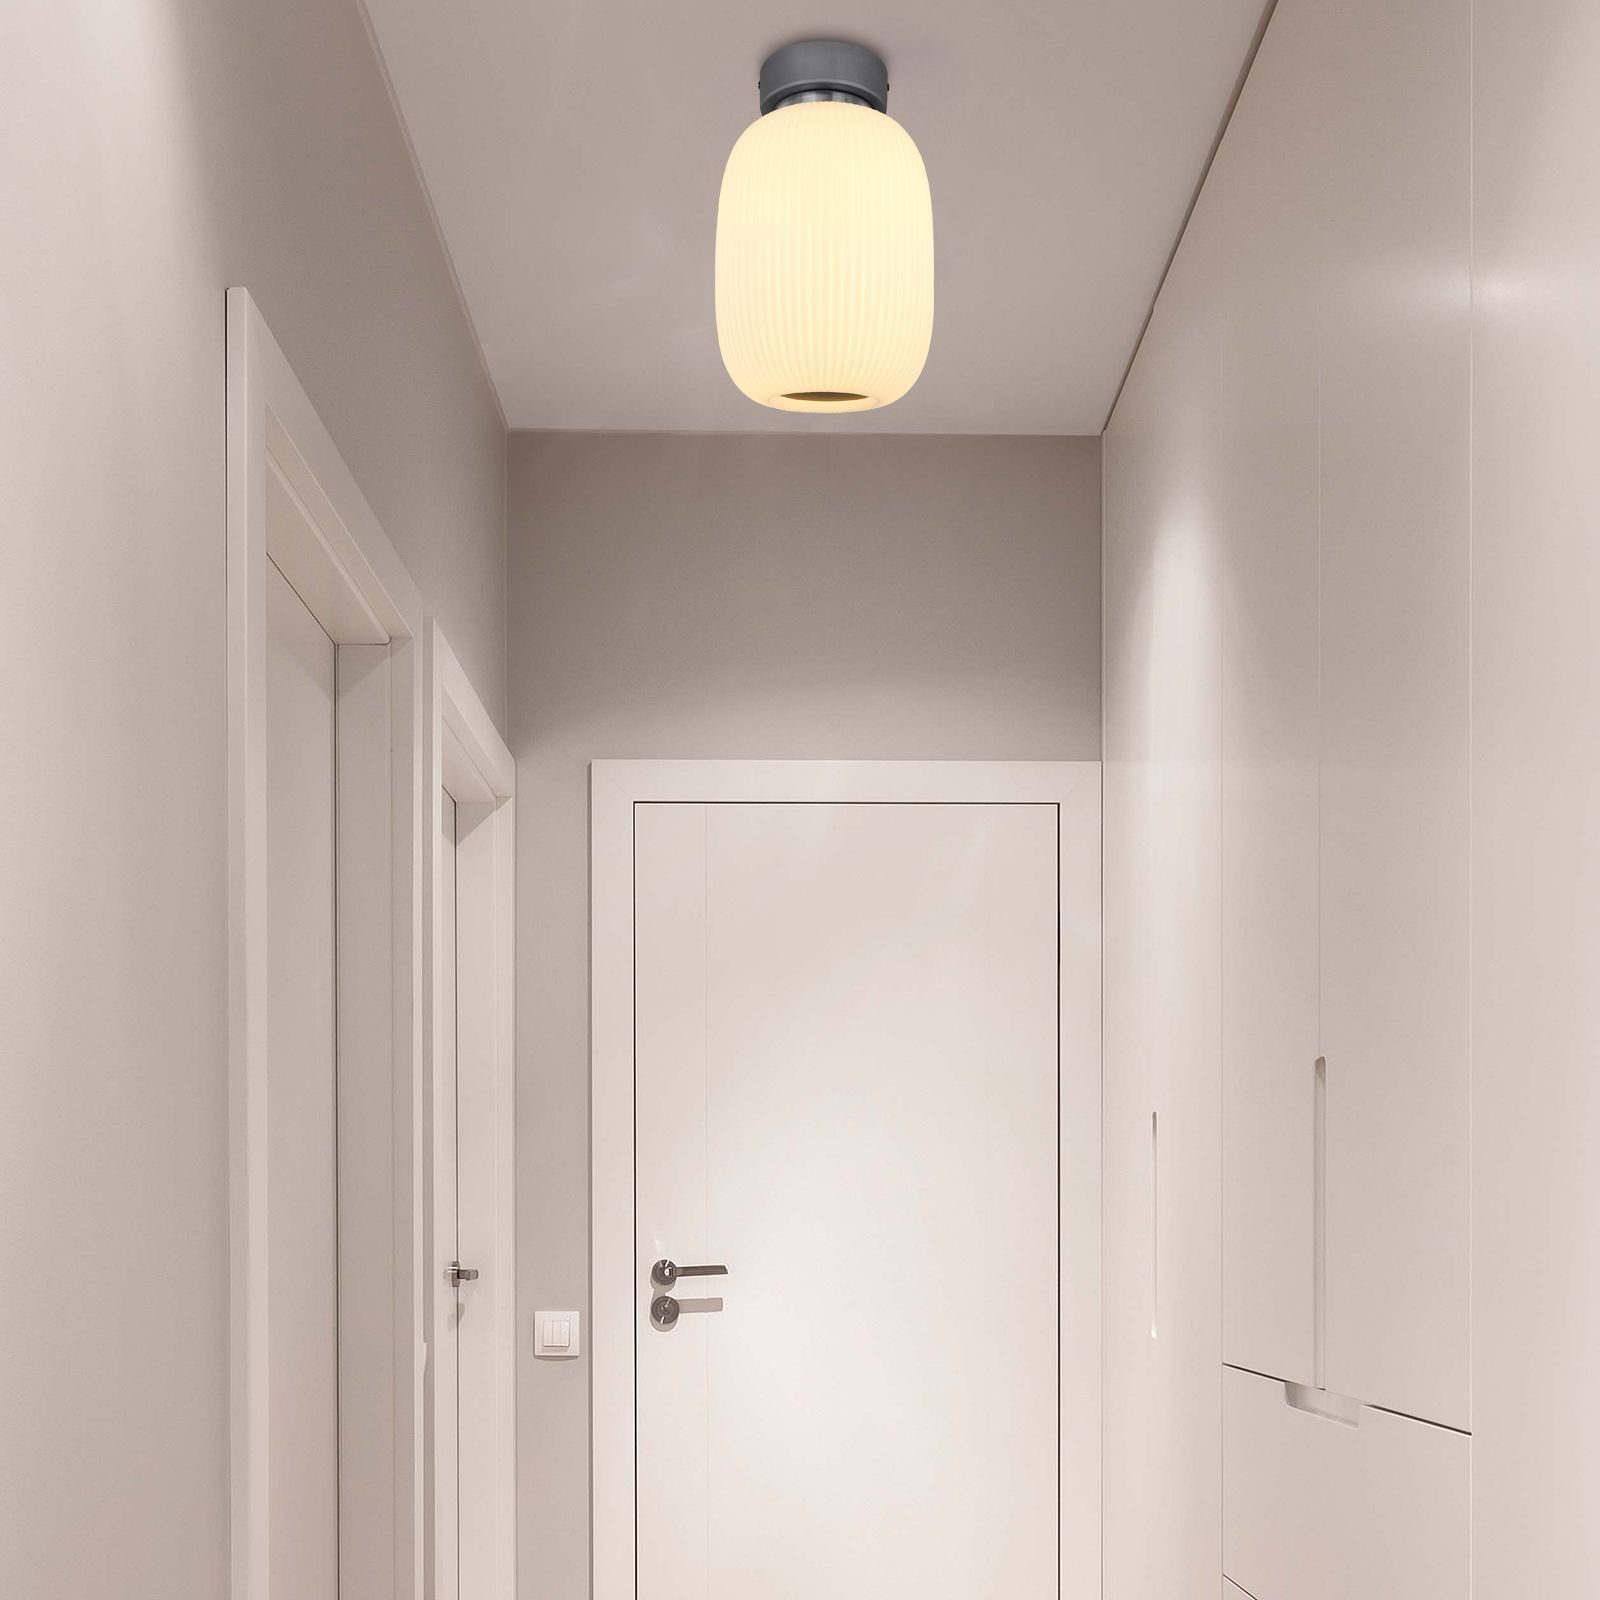 Innen Deckenleuchte Deckenleuchte Schlafzimmer Globo LED Deckenlampe GLOBO Wohnzimmer